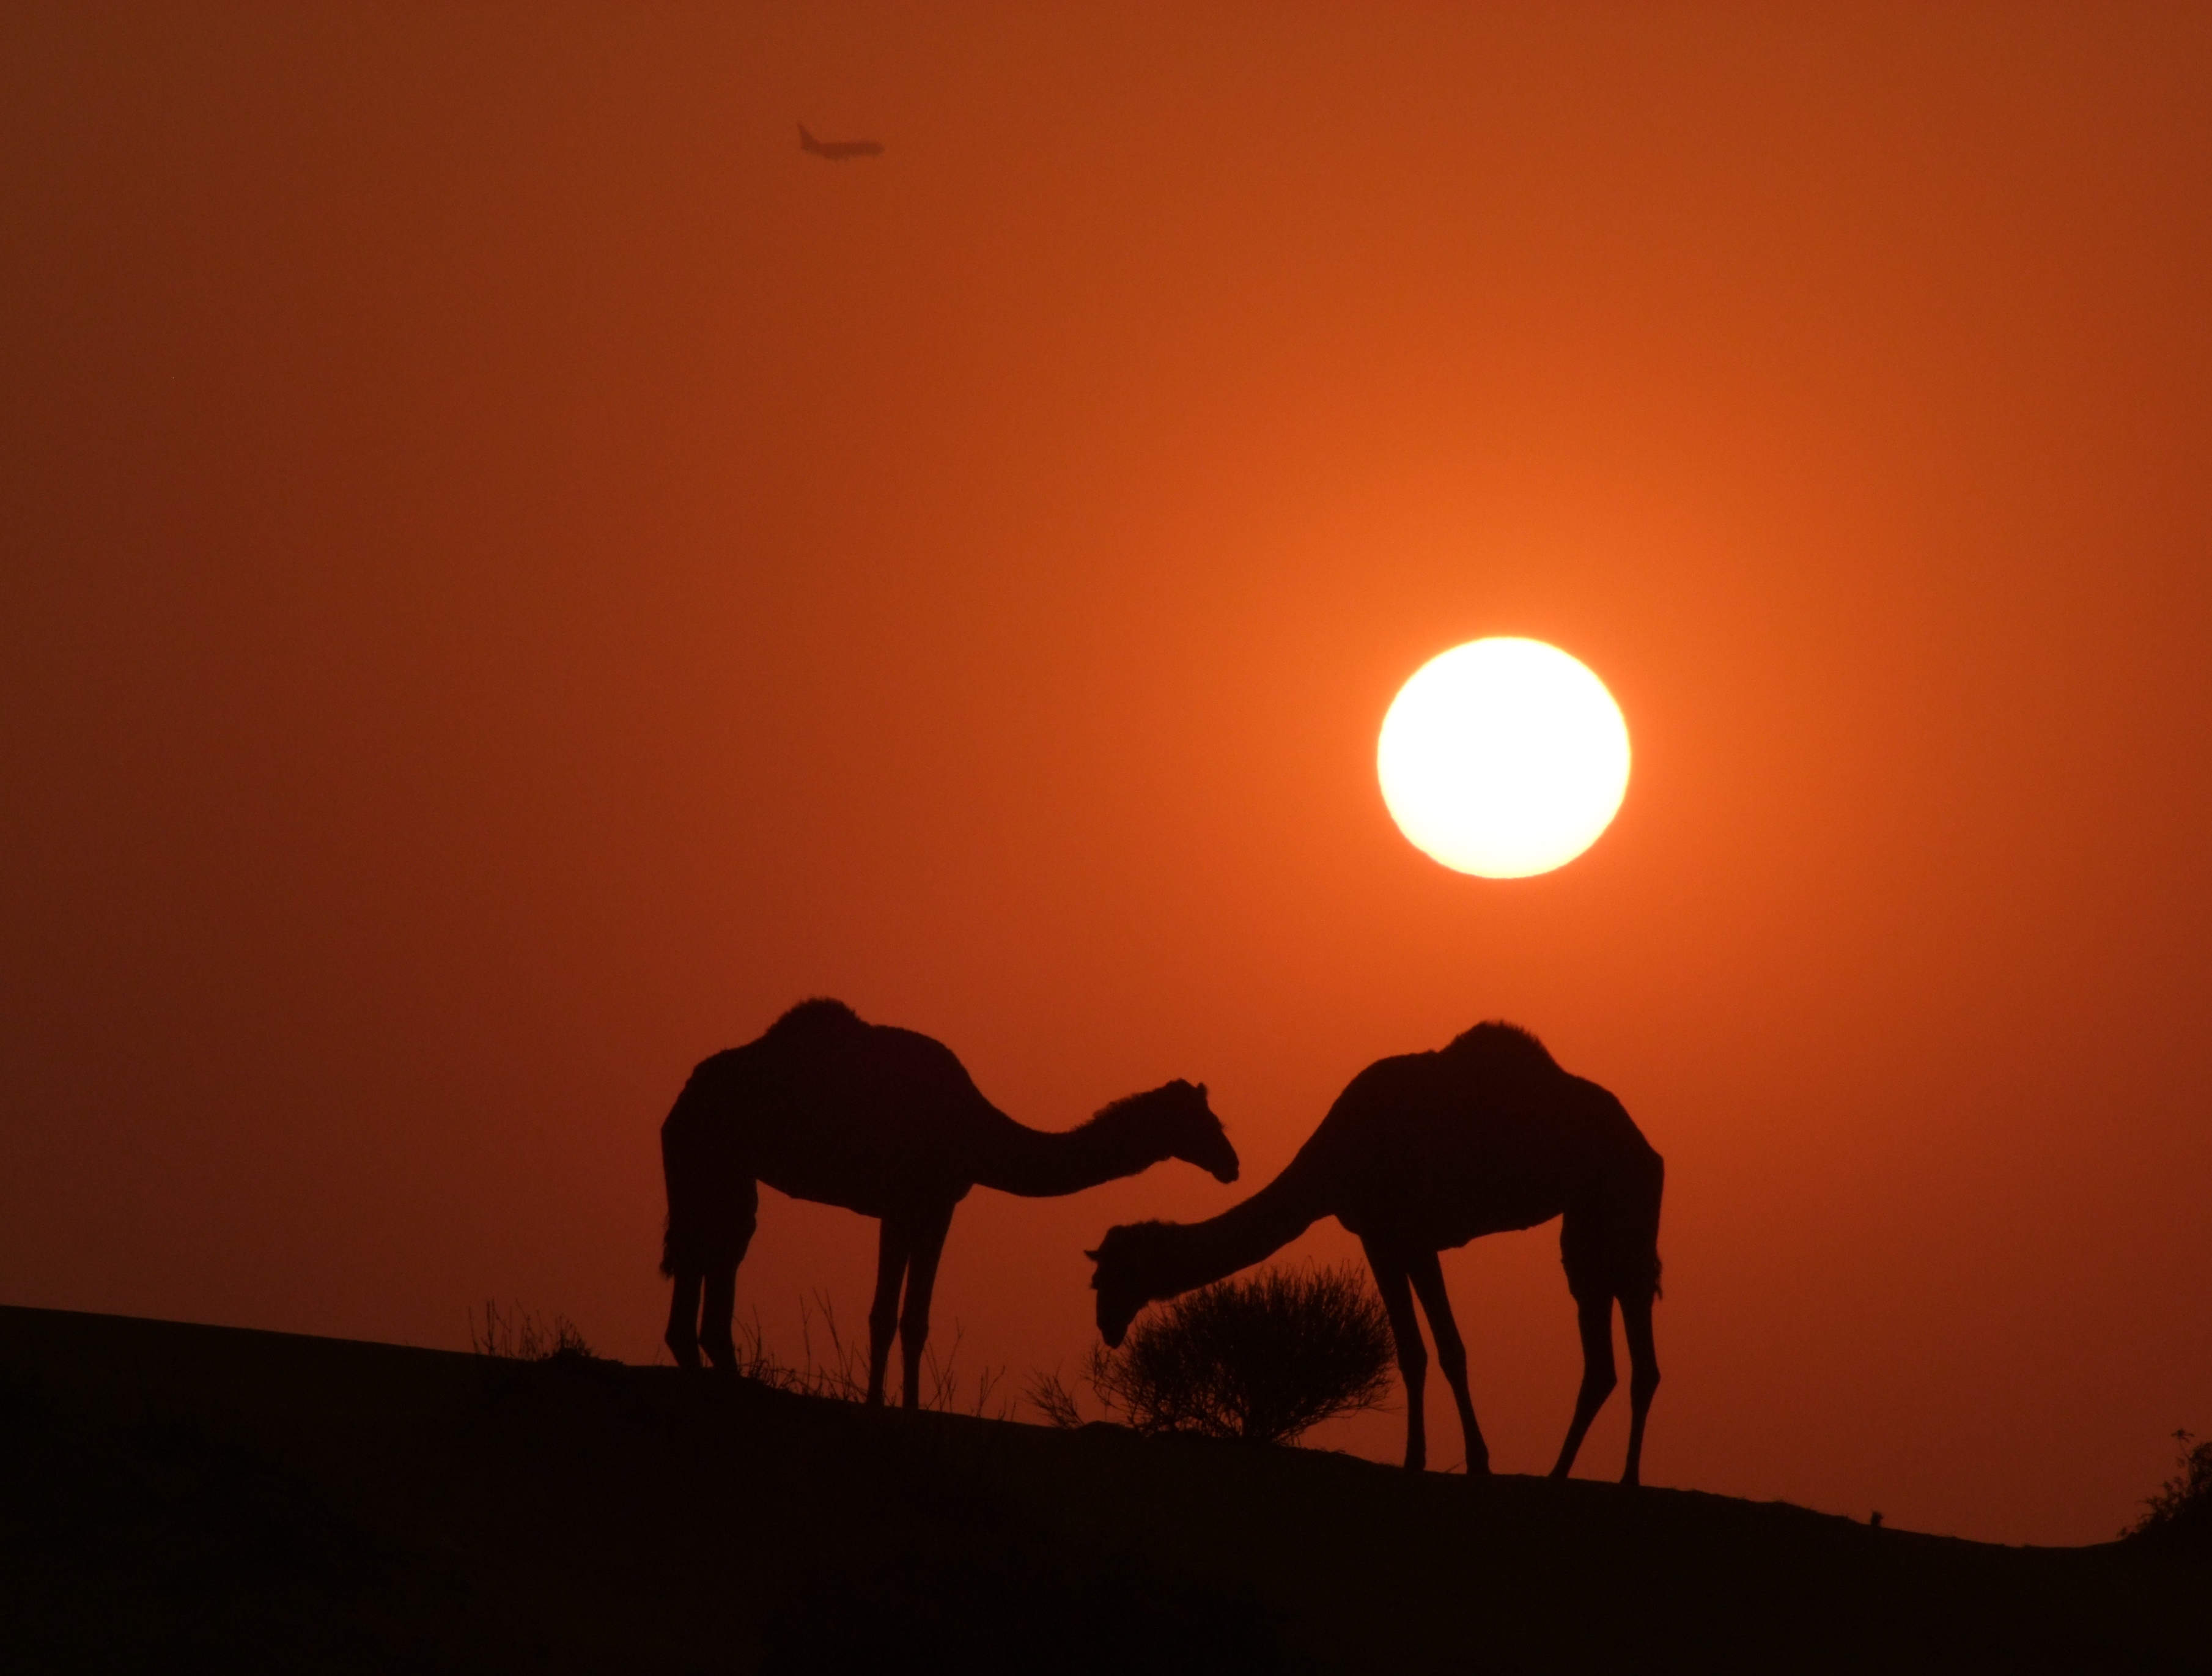 Camels Sharjah Camel Track at Sunset.jpg